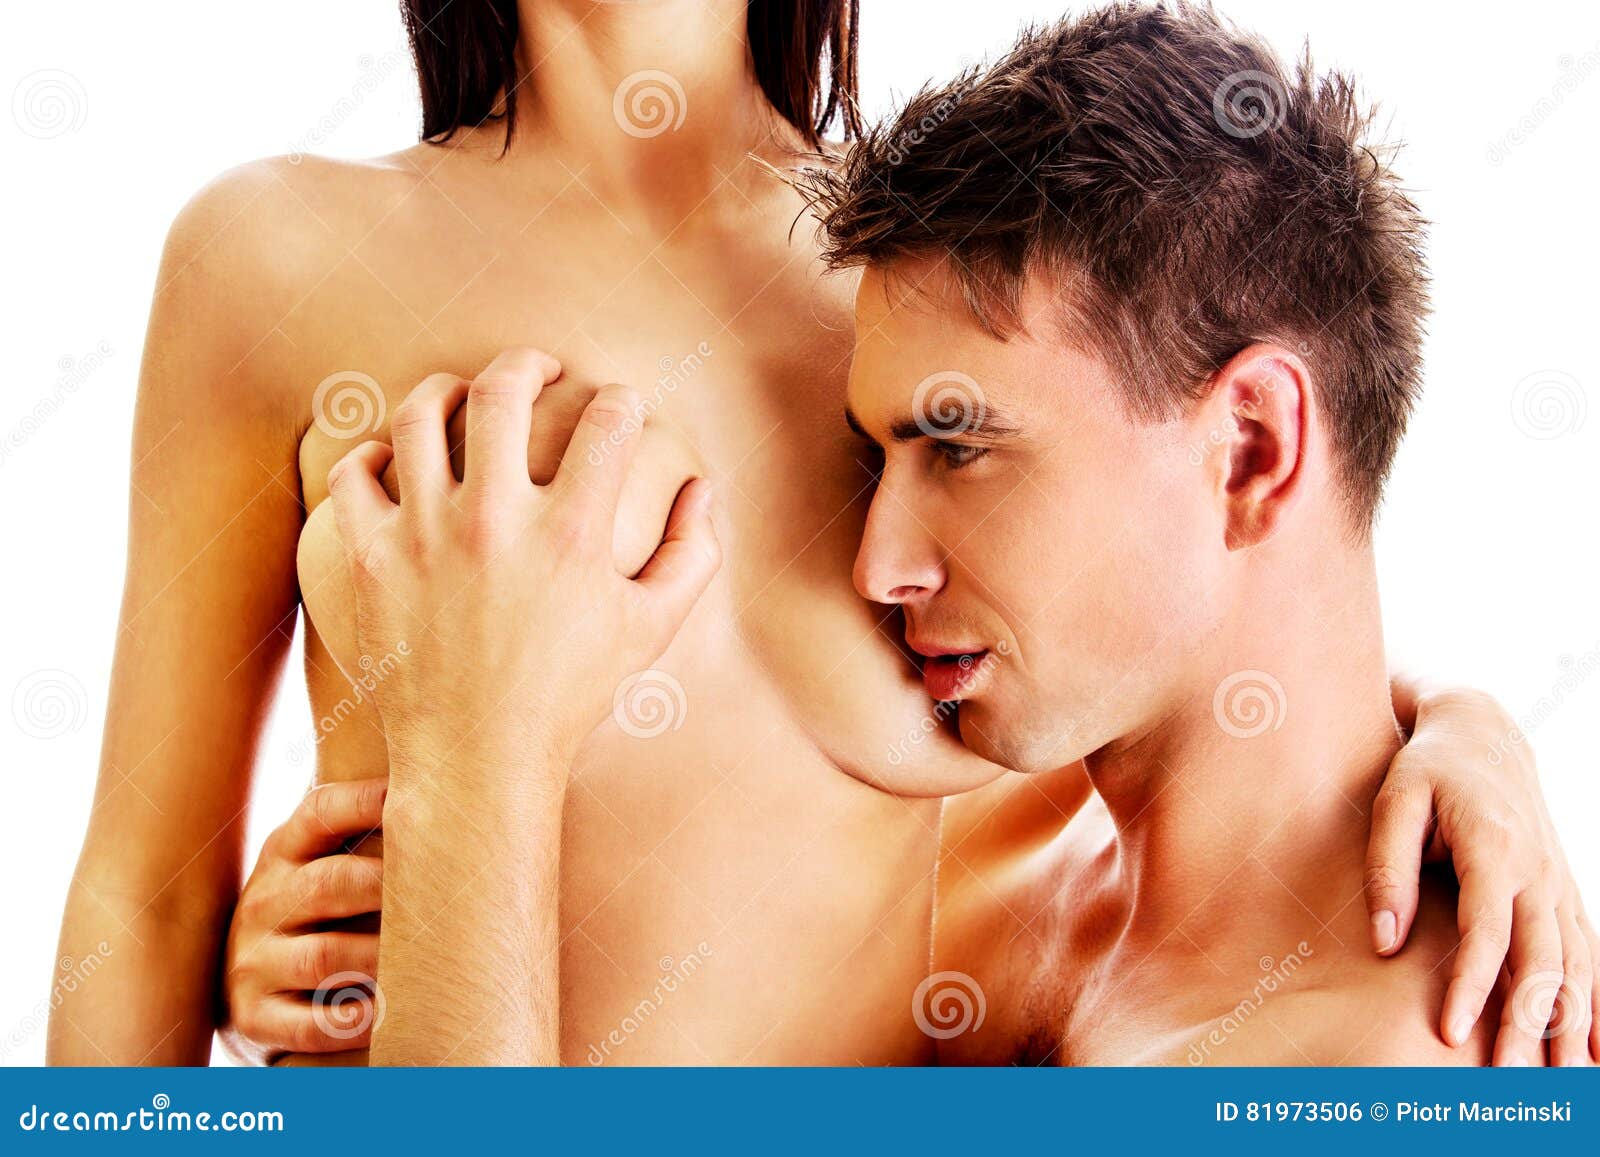 мужчины с женскими грудями фото фото 24